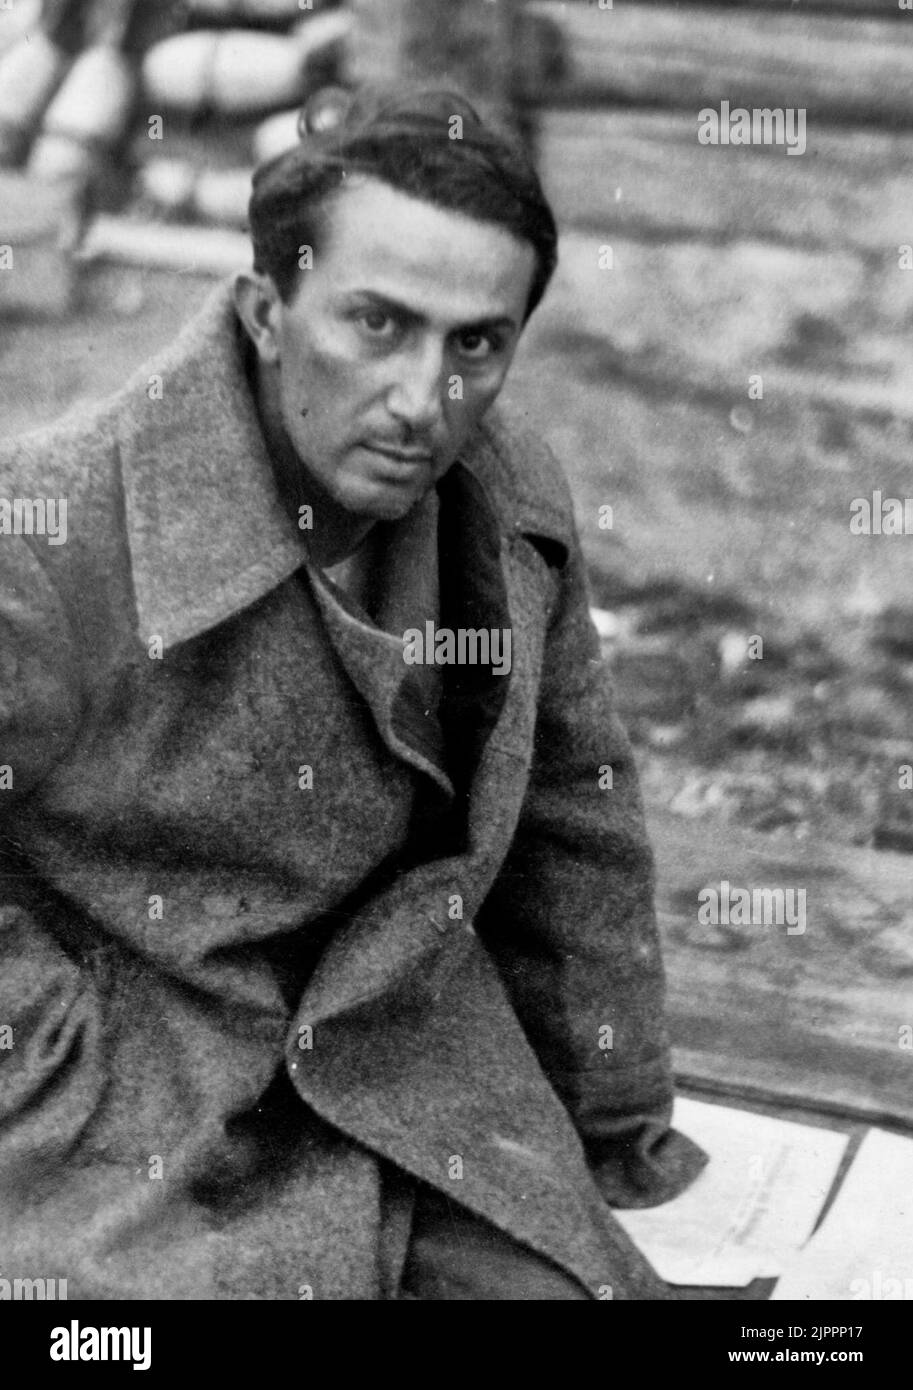 Jakow Dschugaschwili, Sohn des sowjetischen Premierministers Joseph Stalin, kurz nachdem er 1941 von den Nazis gefangen genommen wurde Stockfoto